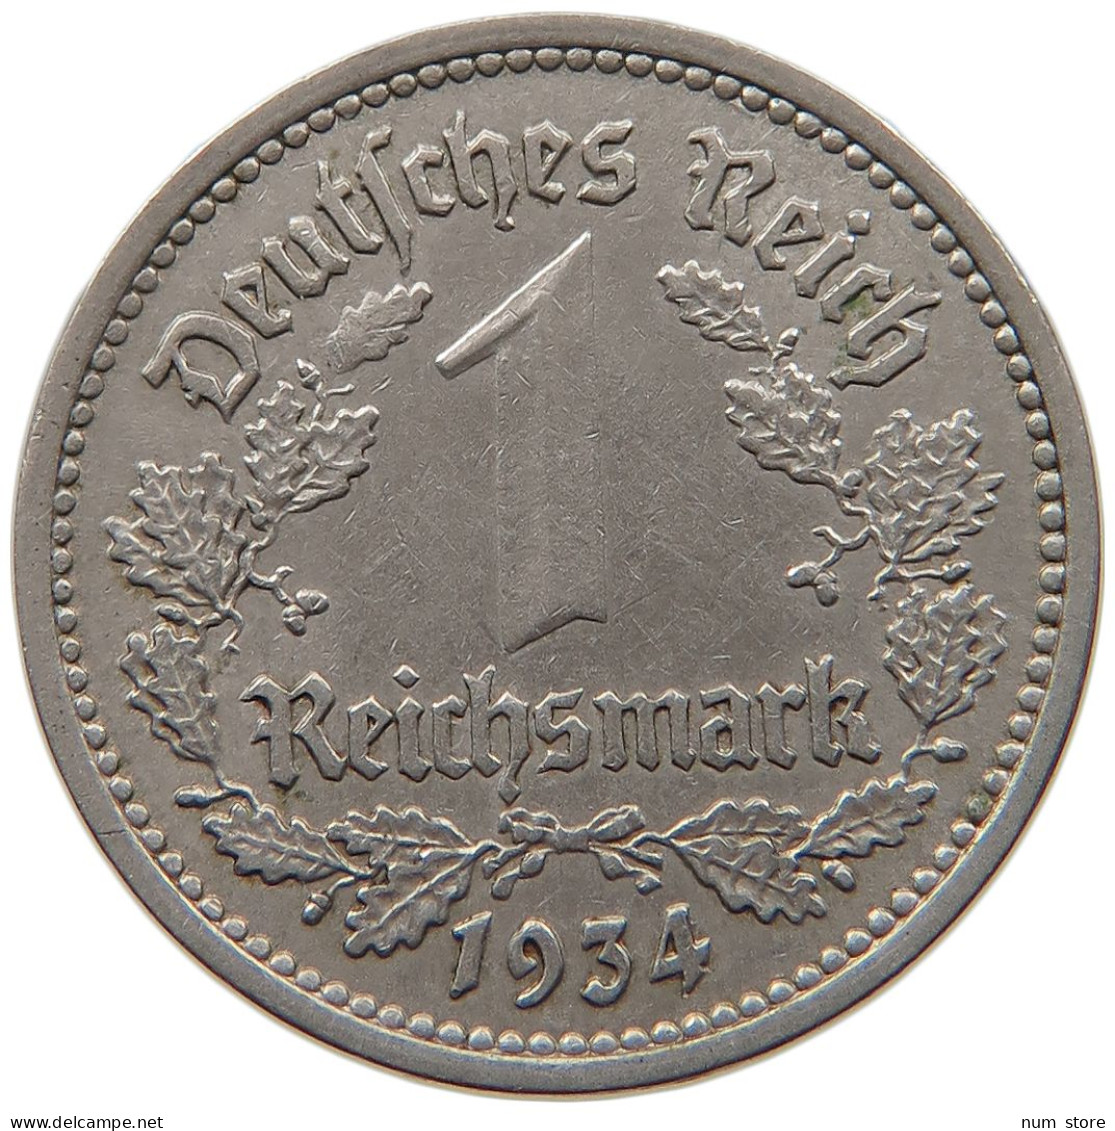 DRITTES REICH MARK 1934 G  #MA 099337 - 1 Reichsmark